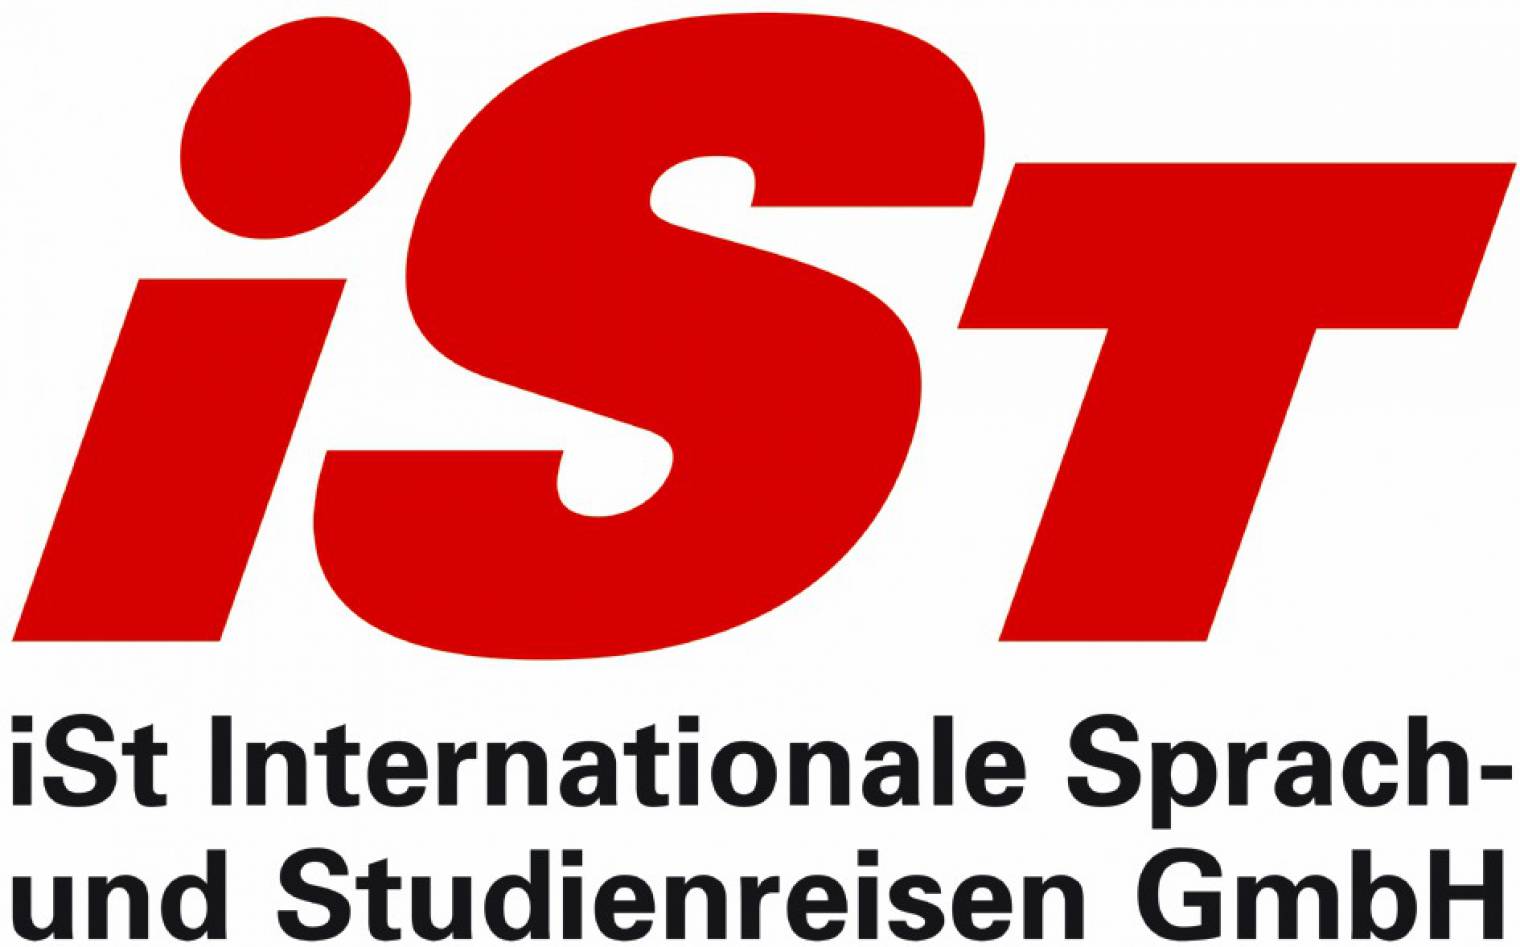 Welcoming our newest member: iSt Internationale Sprach- und Studienreisen GmbH